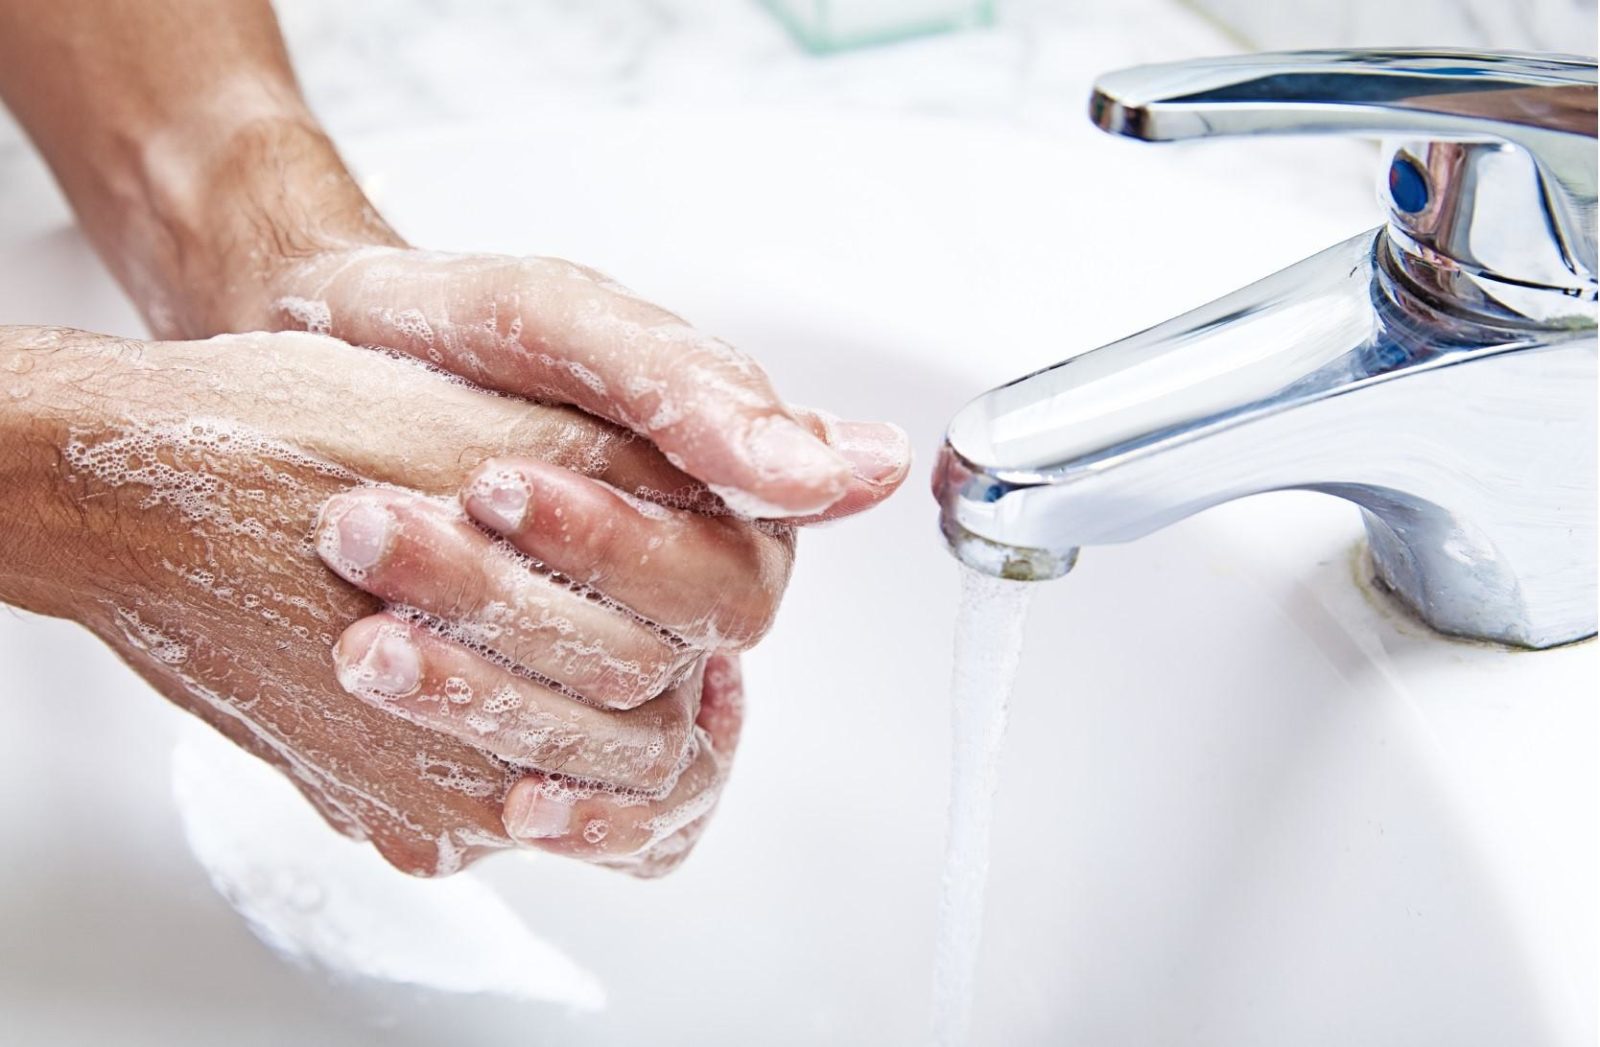 Як правильно мити руки в картинках для дітей. Схема миття рук-наочний матеріал для дошкільнят схема миття рук для старшої групи